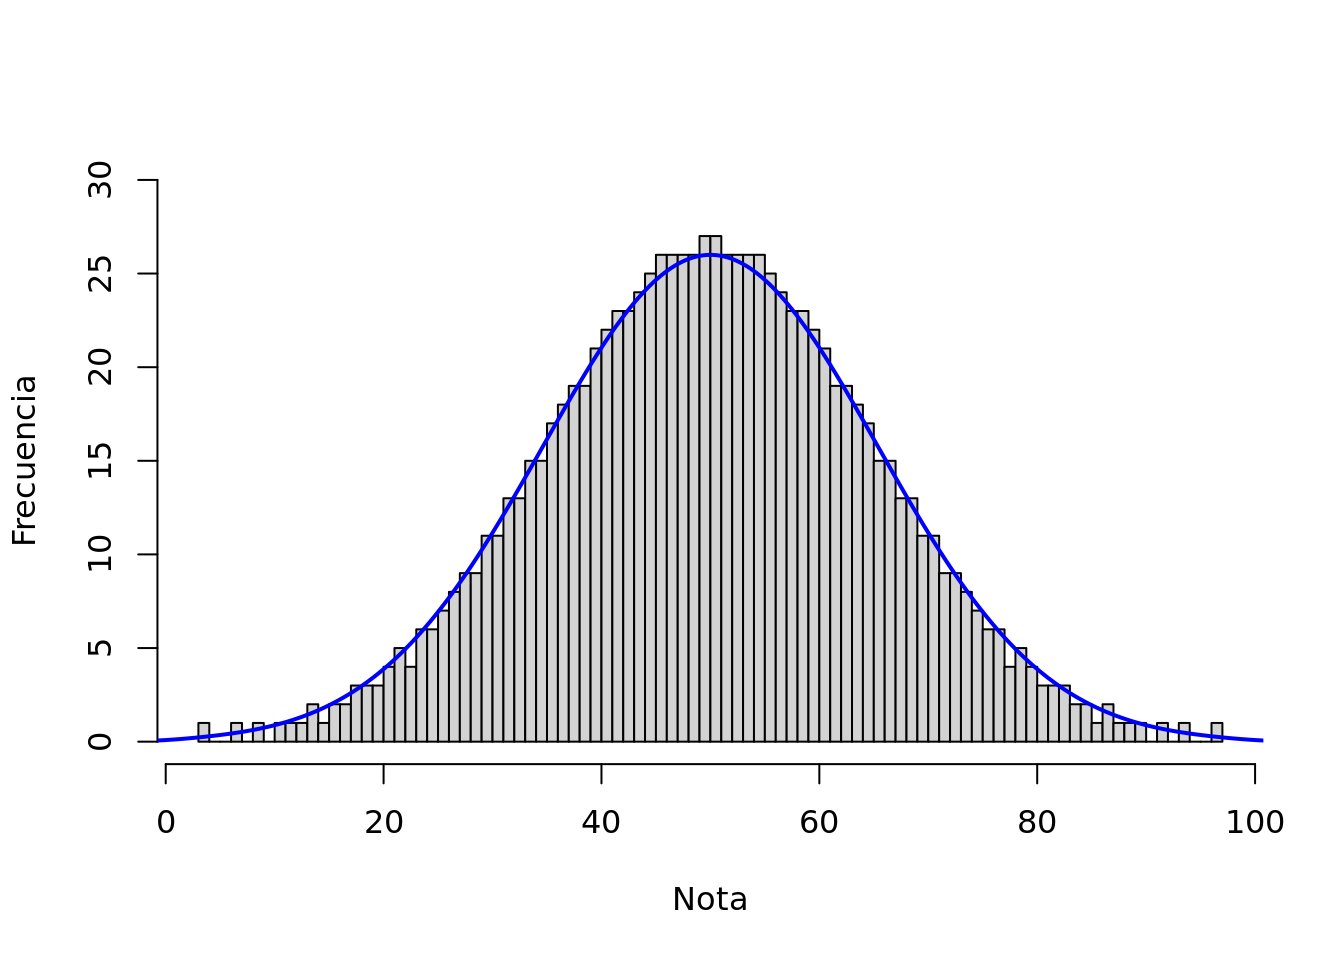 Muestra de notas de un test de matemática (N=1000)